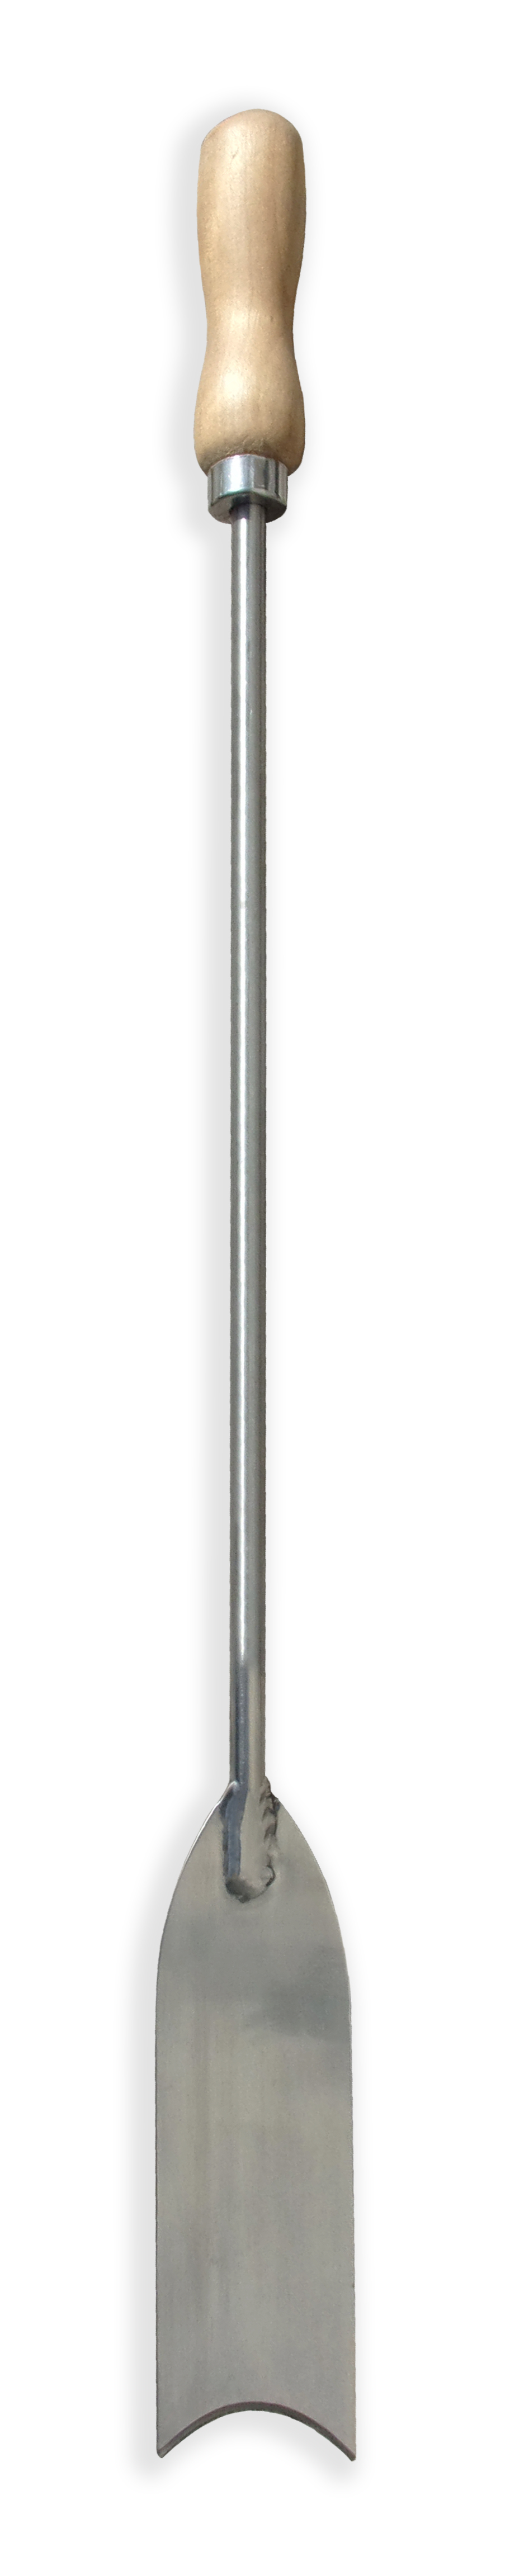 Zenport Cuchillo de espárragos K801 herramienta de deshierbe, hoja de acero inoxidable de media luna de 2 pulgadas, longitud de